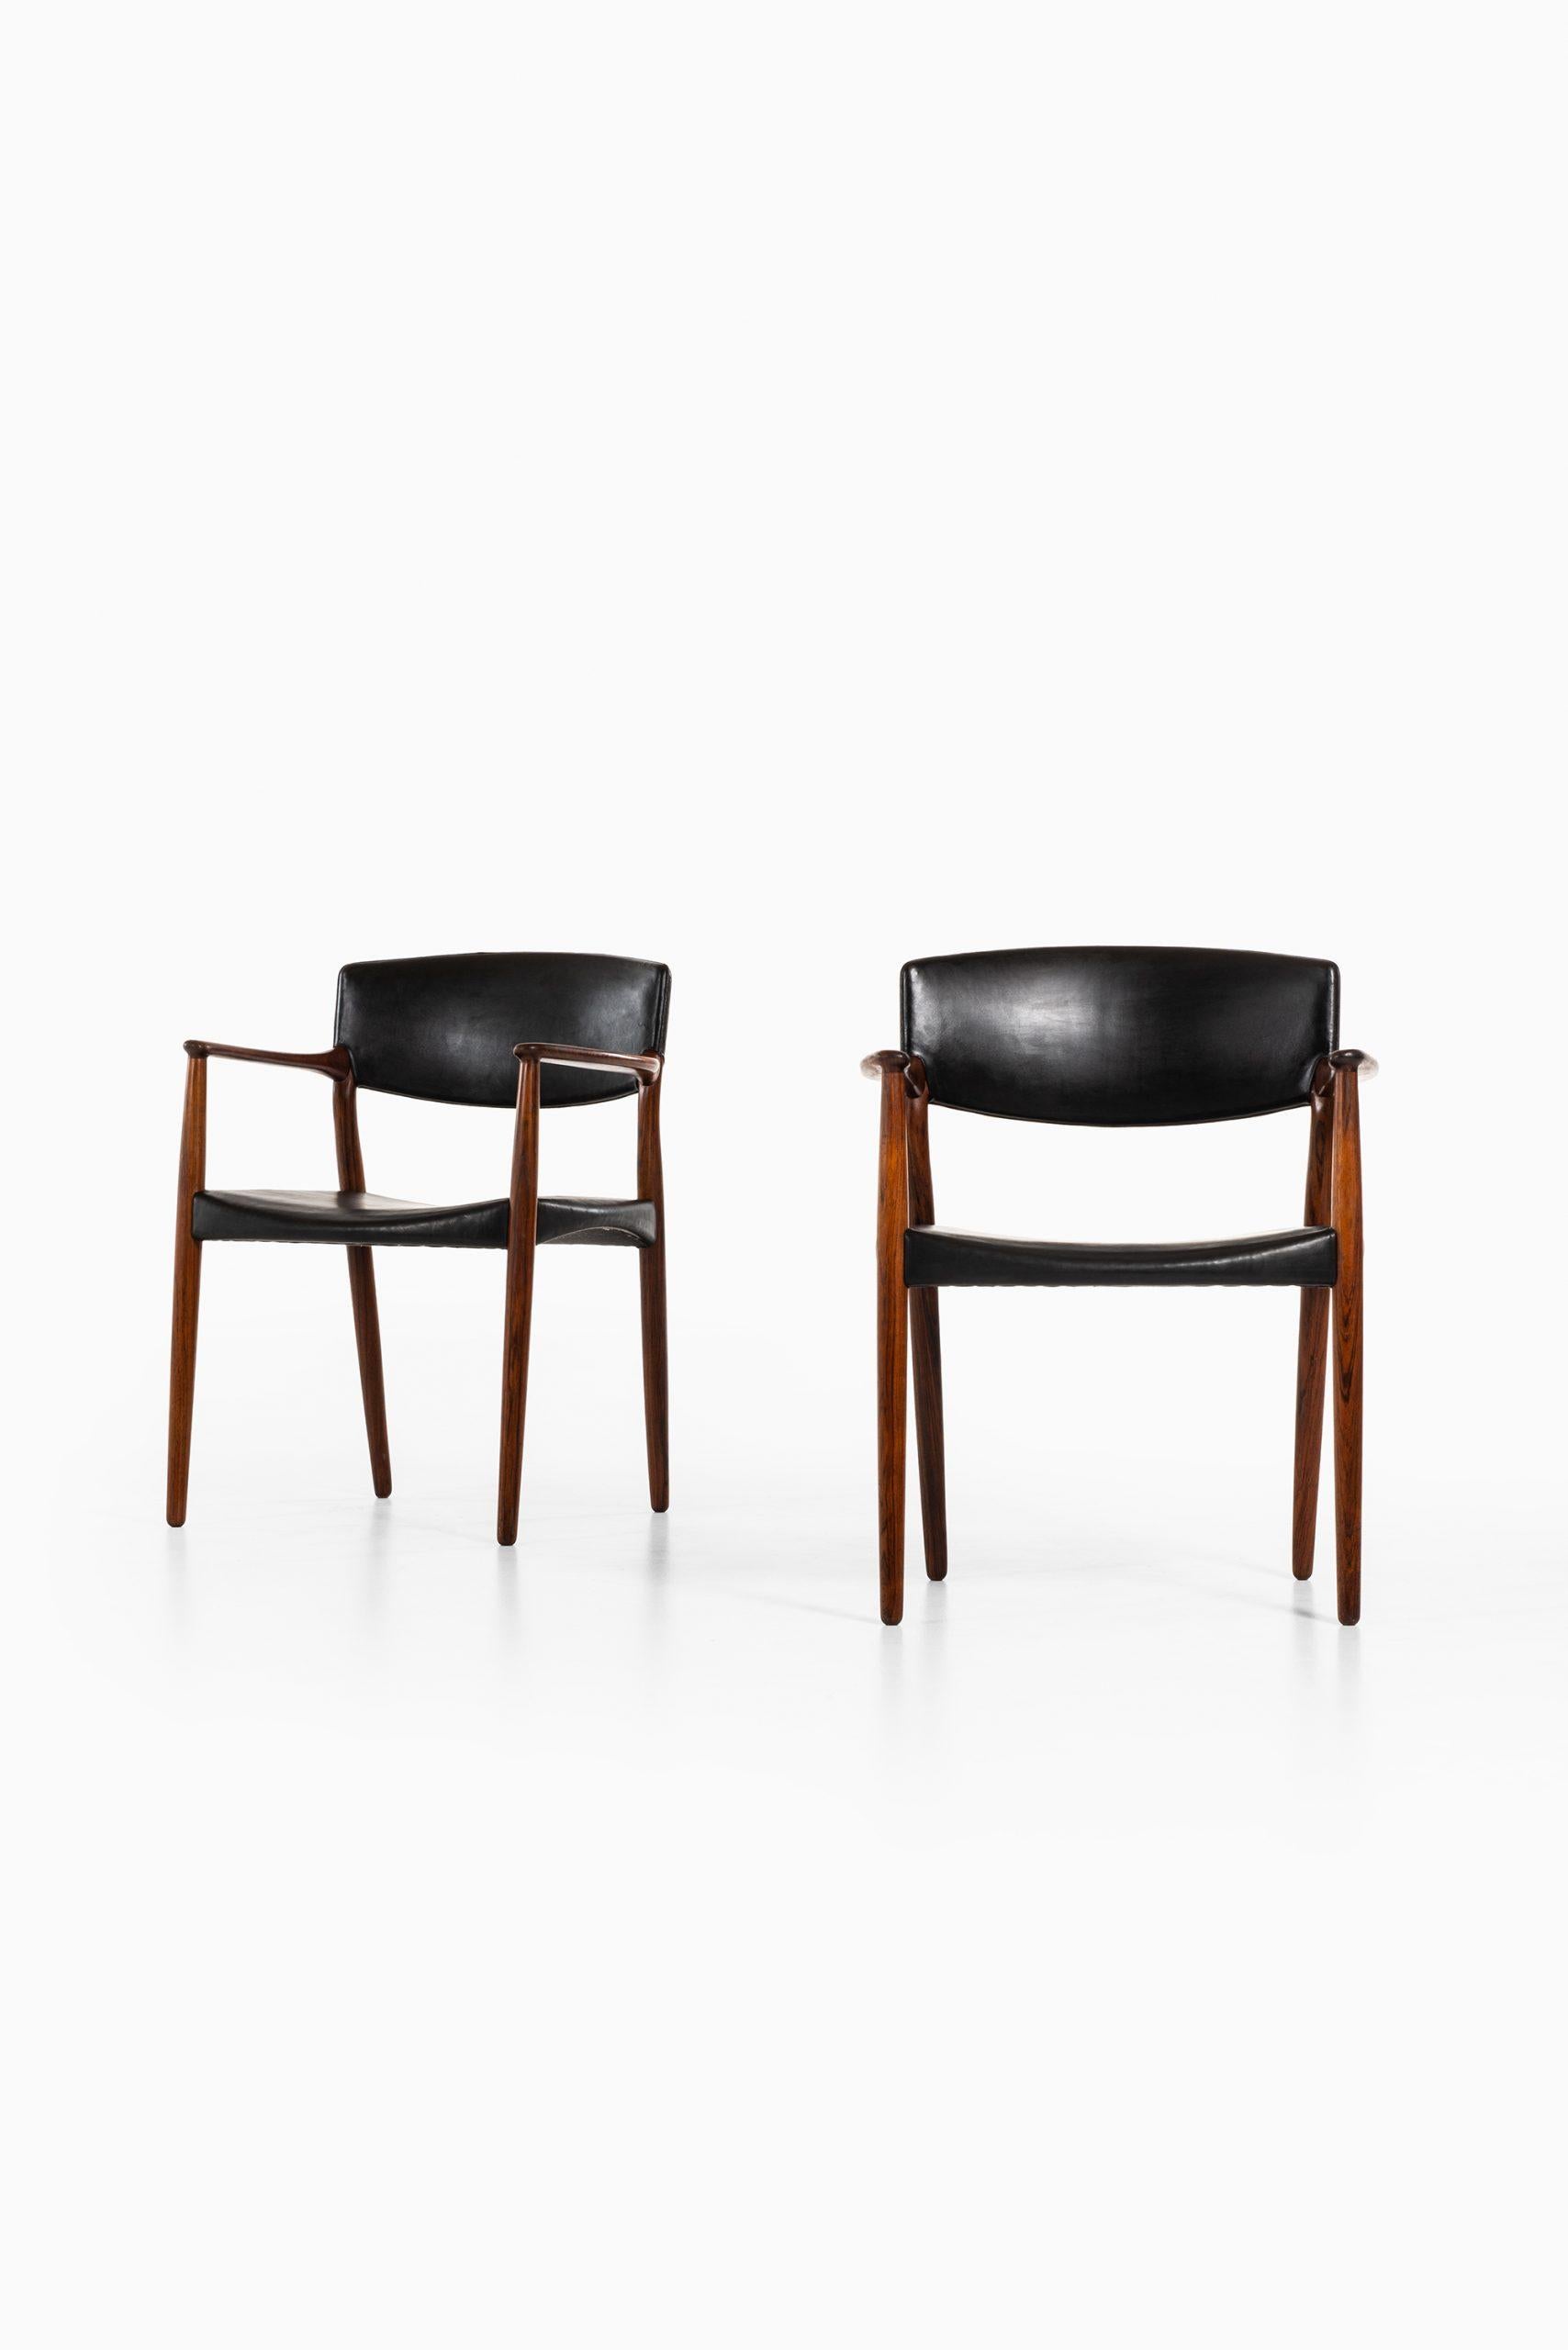 Rare paire de fauteuils conçus par Aksel Bender Madsen & Ejner Larsen. Produit par l'ébéniste Willy Beck au Danemark.